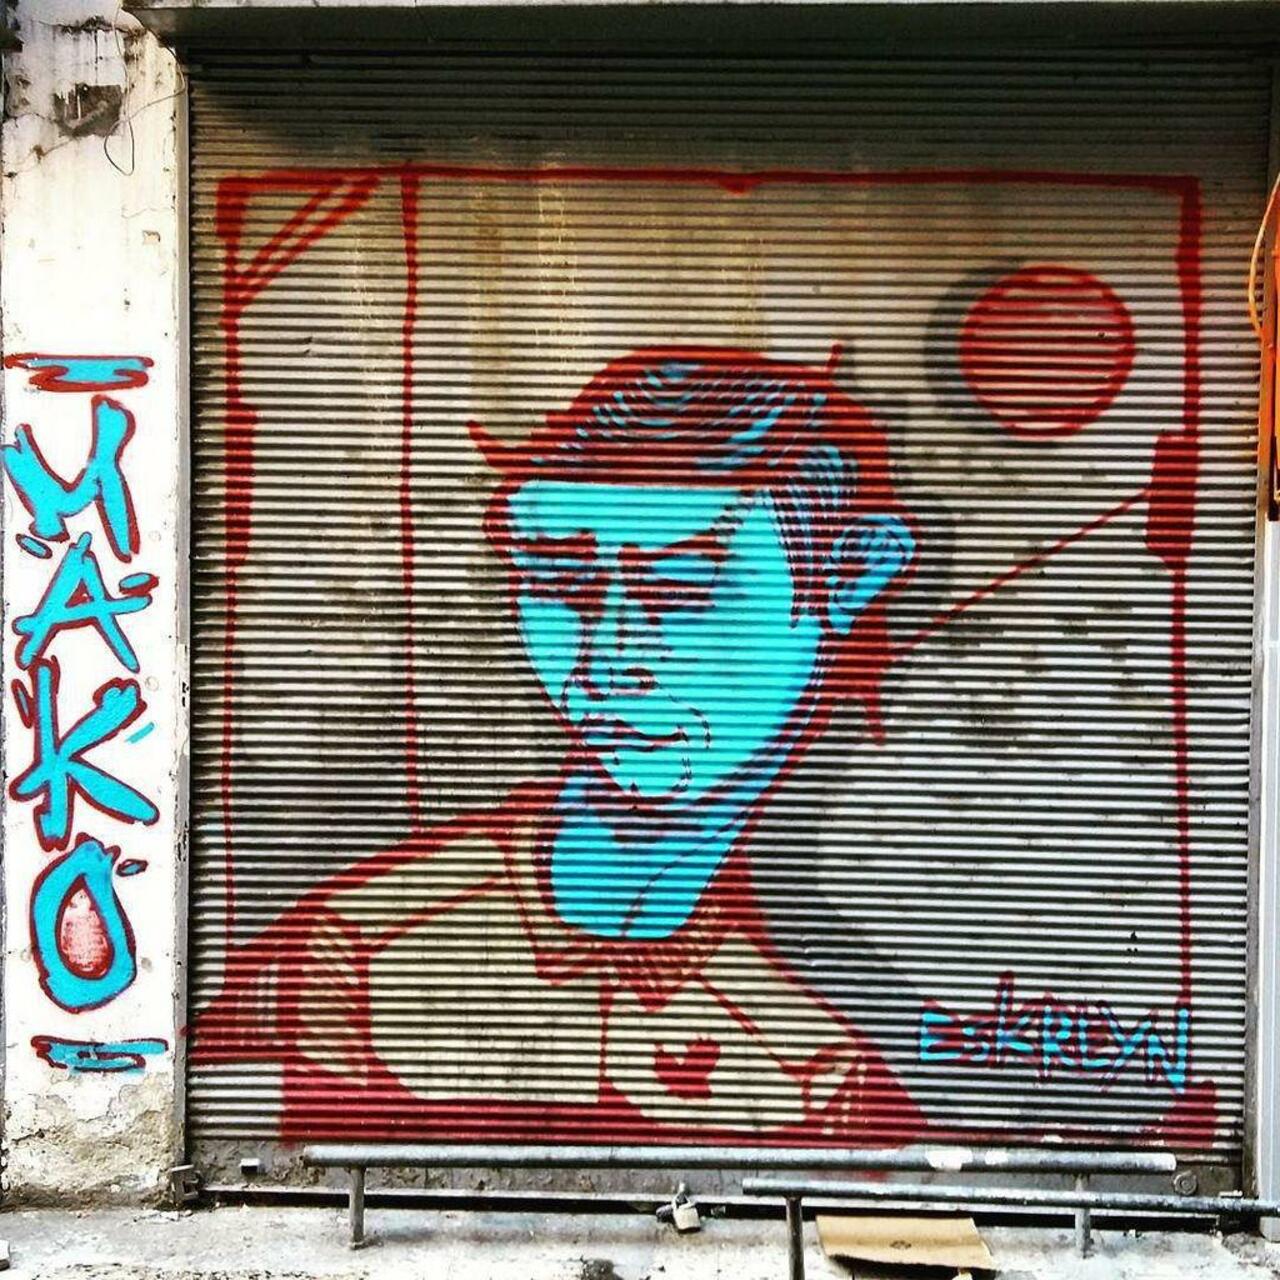 RT @StArtEverywhere: By @eskreyn @dsb_graff #dsb_graff @rsa_graffiti @streetawesome #streetart #urbanart #graffitiart #graffiti #streeta… http://t.co/xzbV9BtQI1